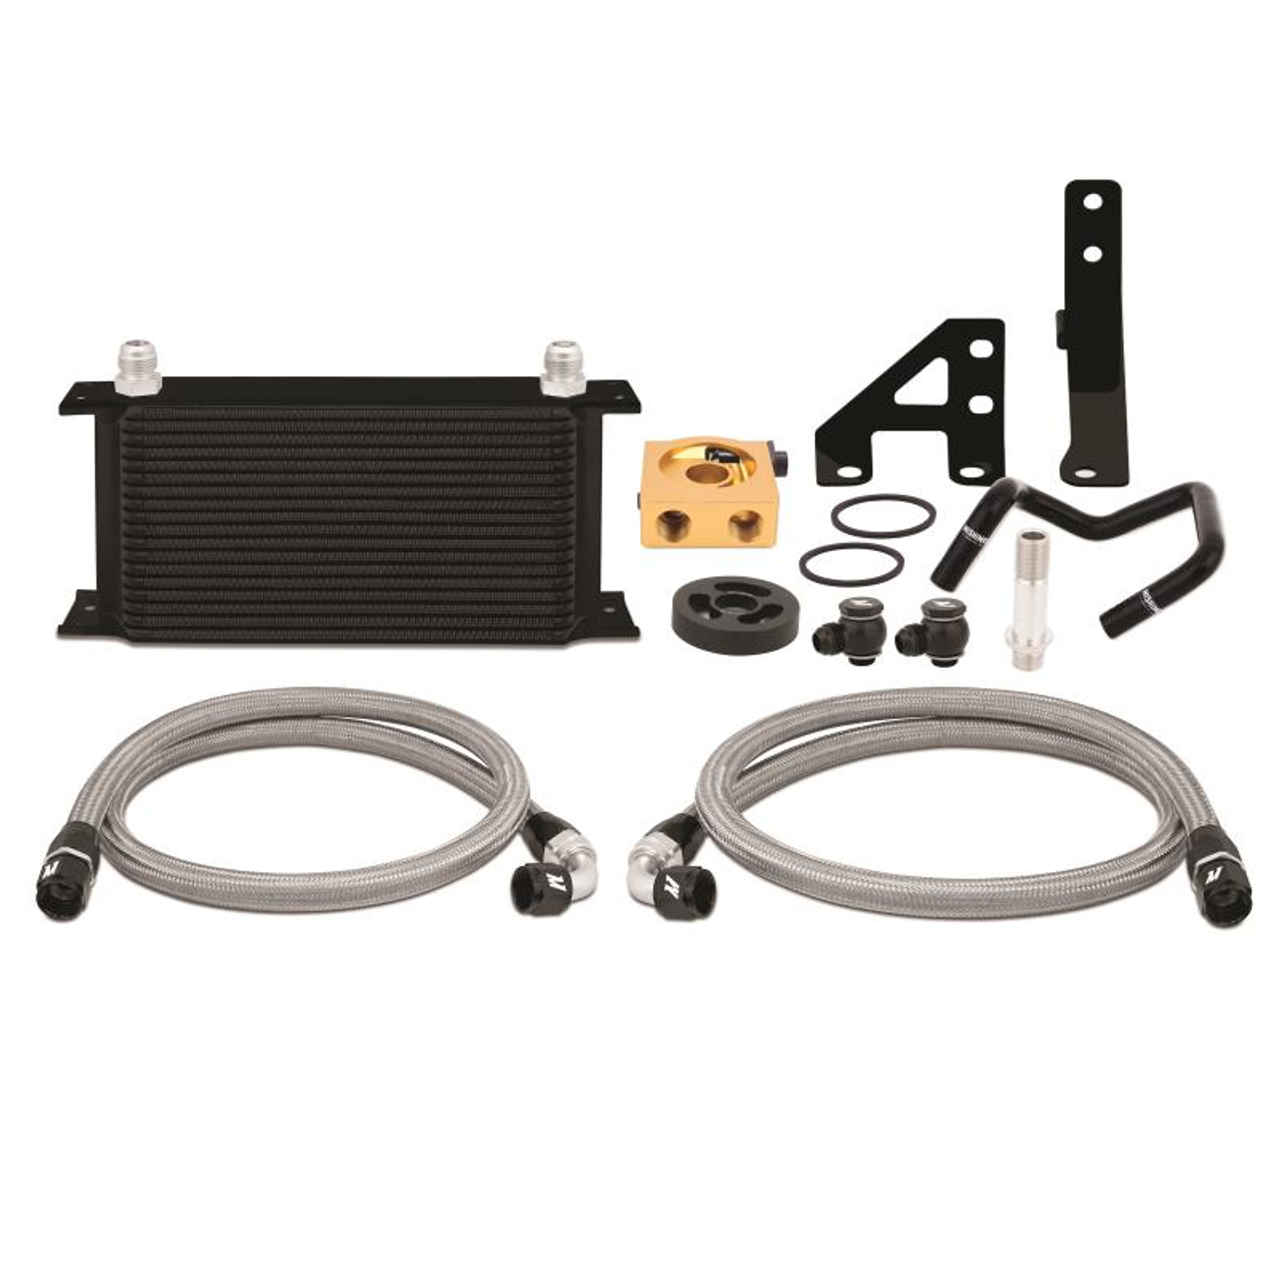 Mishimoto 2015 Subaru WRX Thermostatic Oil Cooler Kit - Black